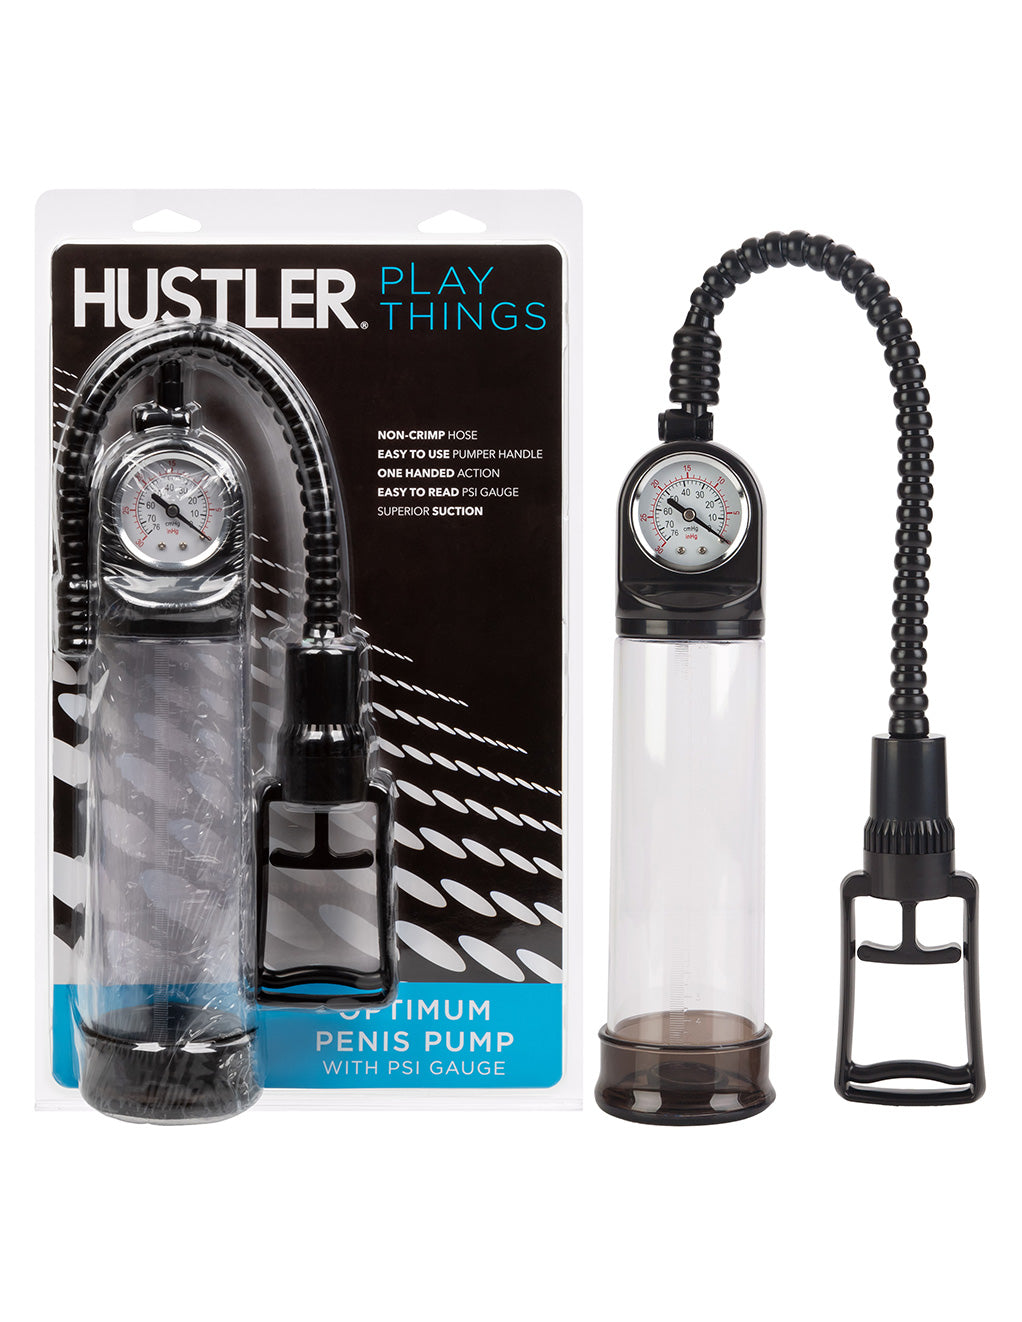 Hustler® Playthings Optimum Penis Pump- With package